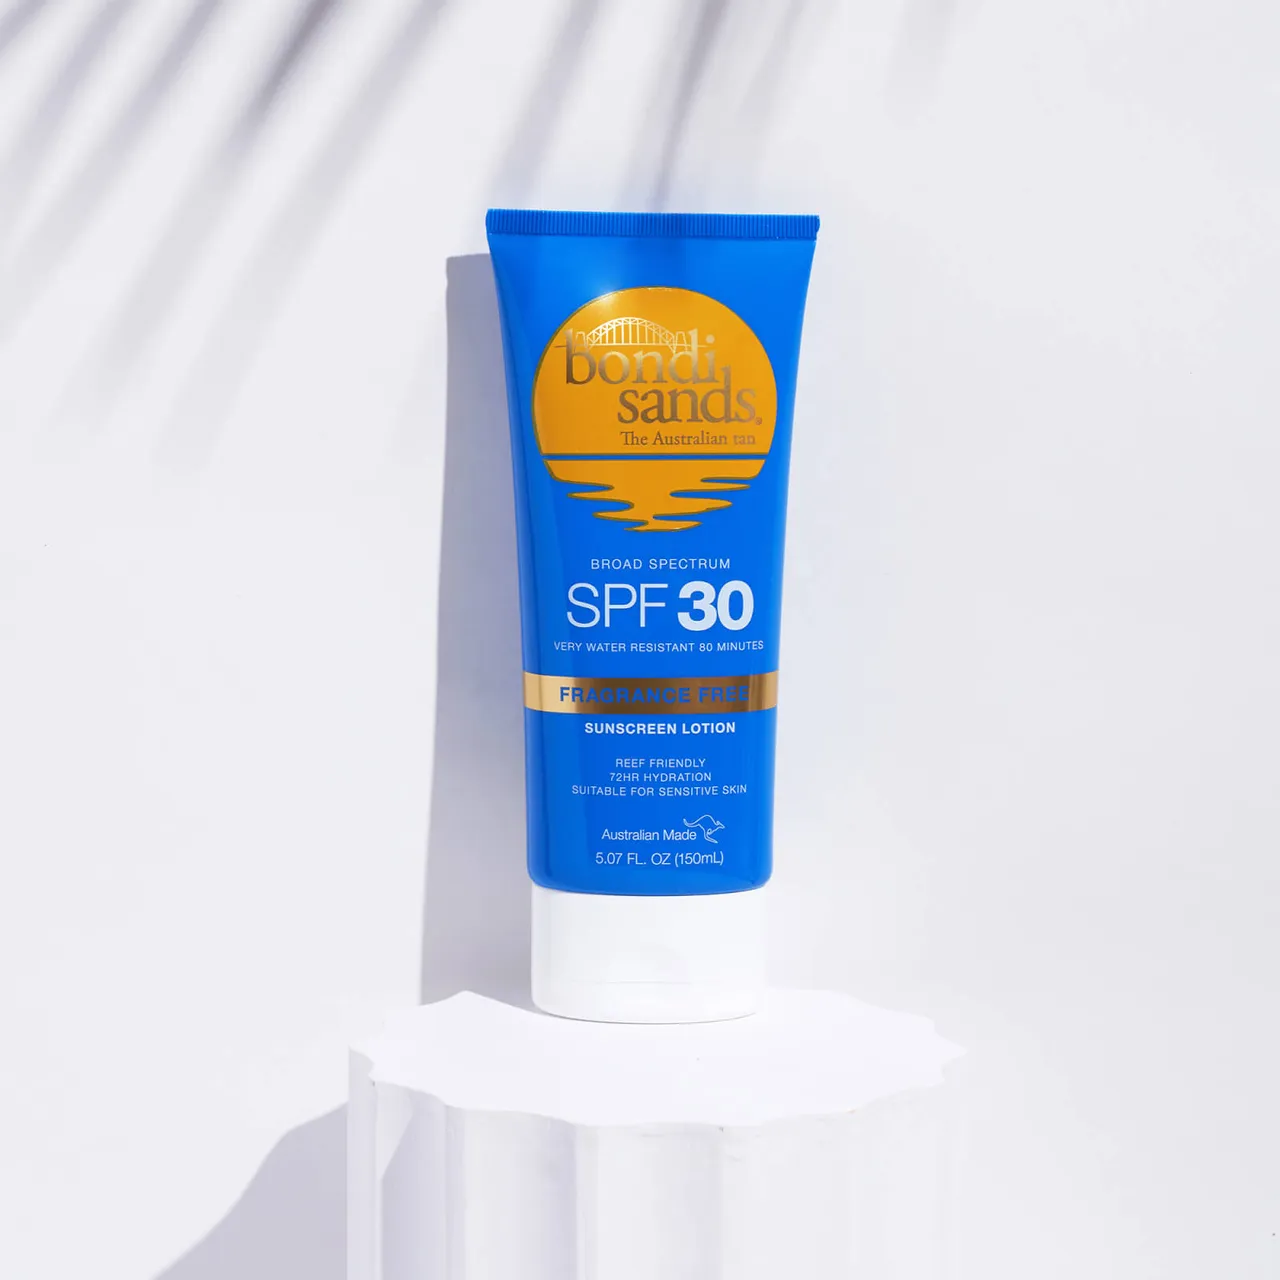 Bondi Sands Fragrance Free Suncreen Lotion SPF 30 150ml